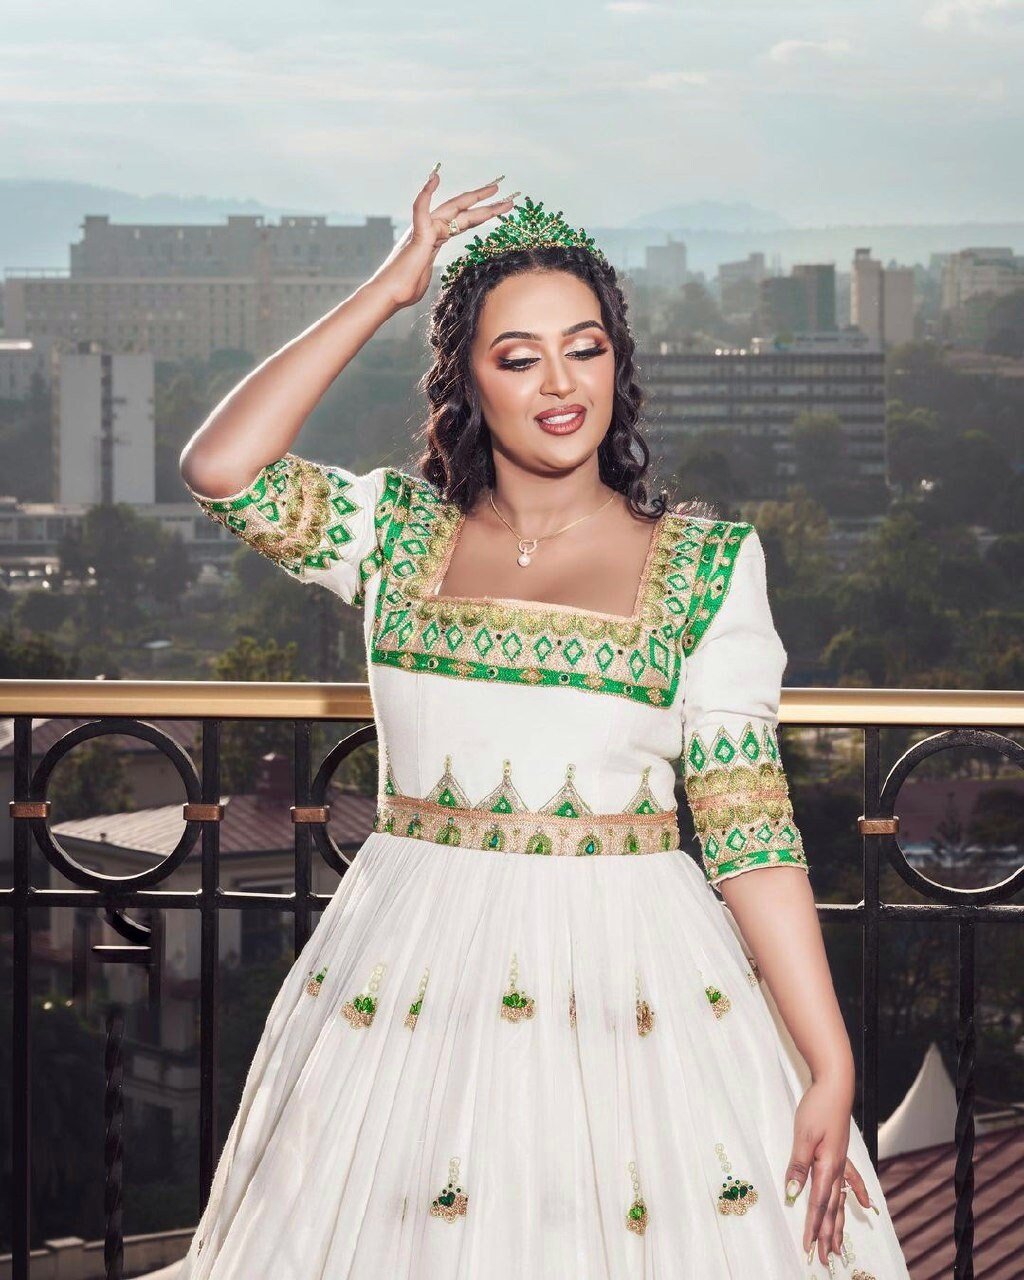 Enchanting Elegant Habesha Kemis Beaded Habesha Wedding Dress with Stunning Green and Multicolor Designs